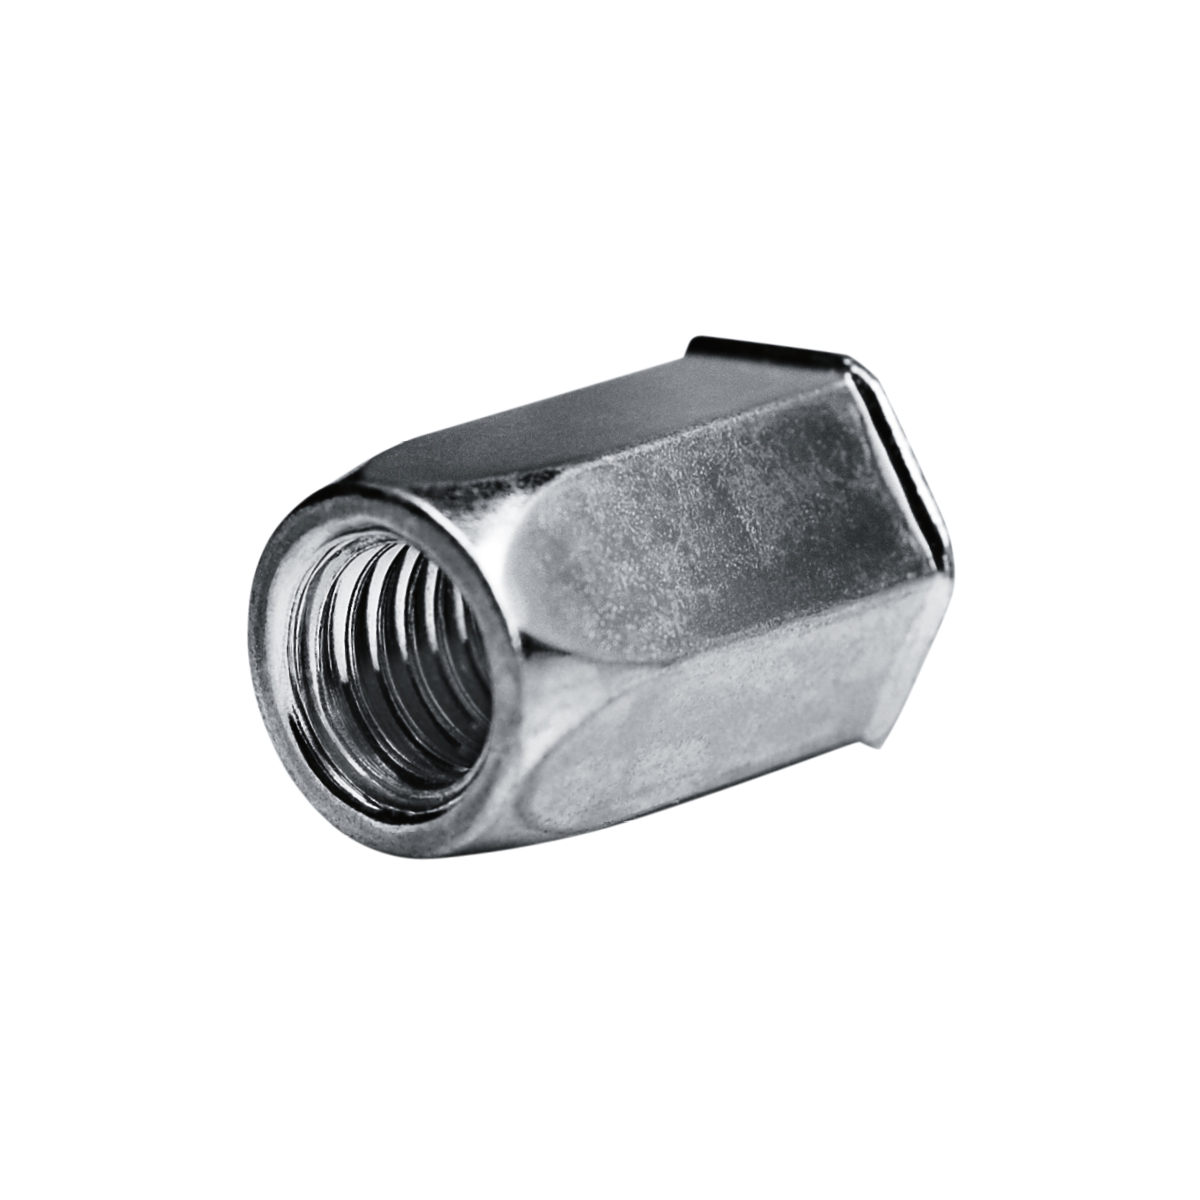 Blind Rivet Nuts M 10 - Steel [ AISI 1008 ] Galvanized (Ø x L) 13,0 mm x  24,0 mm - Small countersunk head Hexagonal shaft - Shaft end open - GO-NUT  - 7551002101 - Rivet Nuts - Blind Nuts